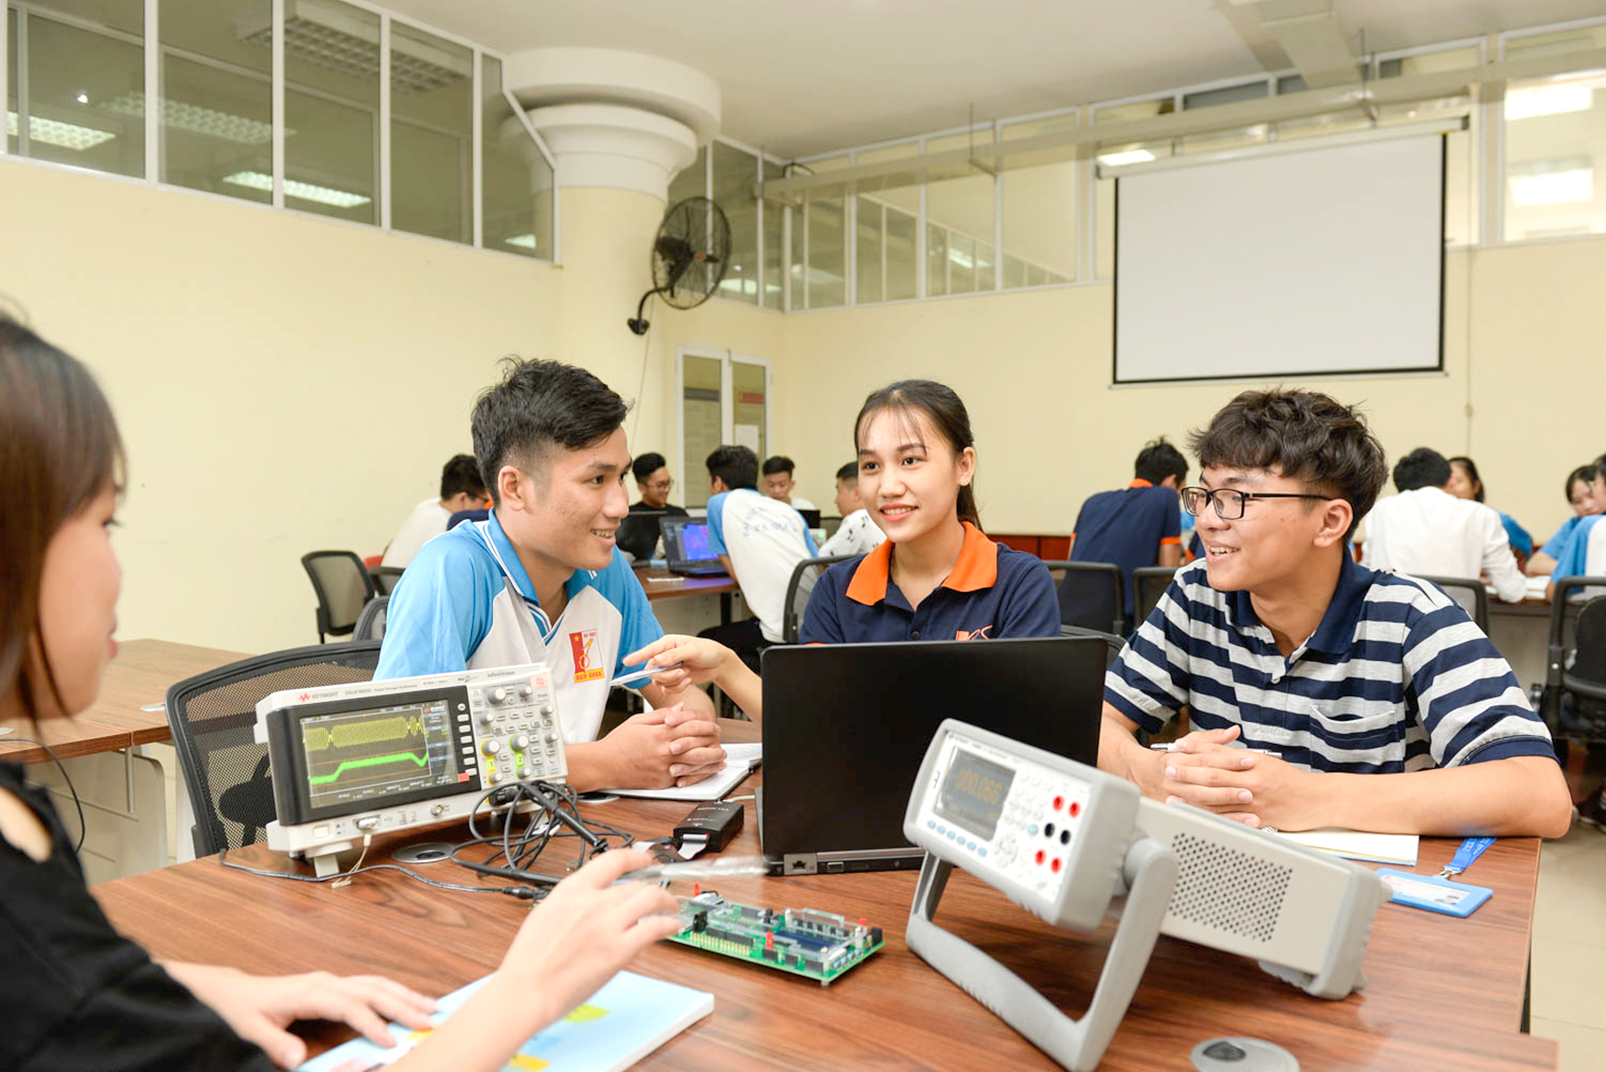 Sinh viên Trường đại học Bách khoa Hà Nội, một trong những cơ sở giáo dục đại học hàng đầu của Việt Nam trong lĩnh vực liên kết đào tạo quốc tế, trong giờ học điện tử viễn thông - ẢNH: KIM CHI